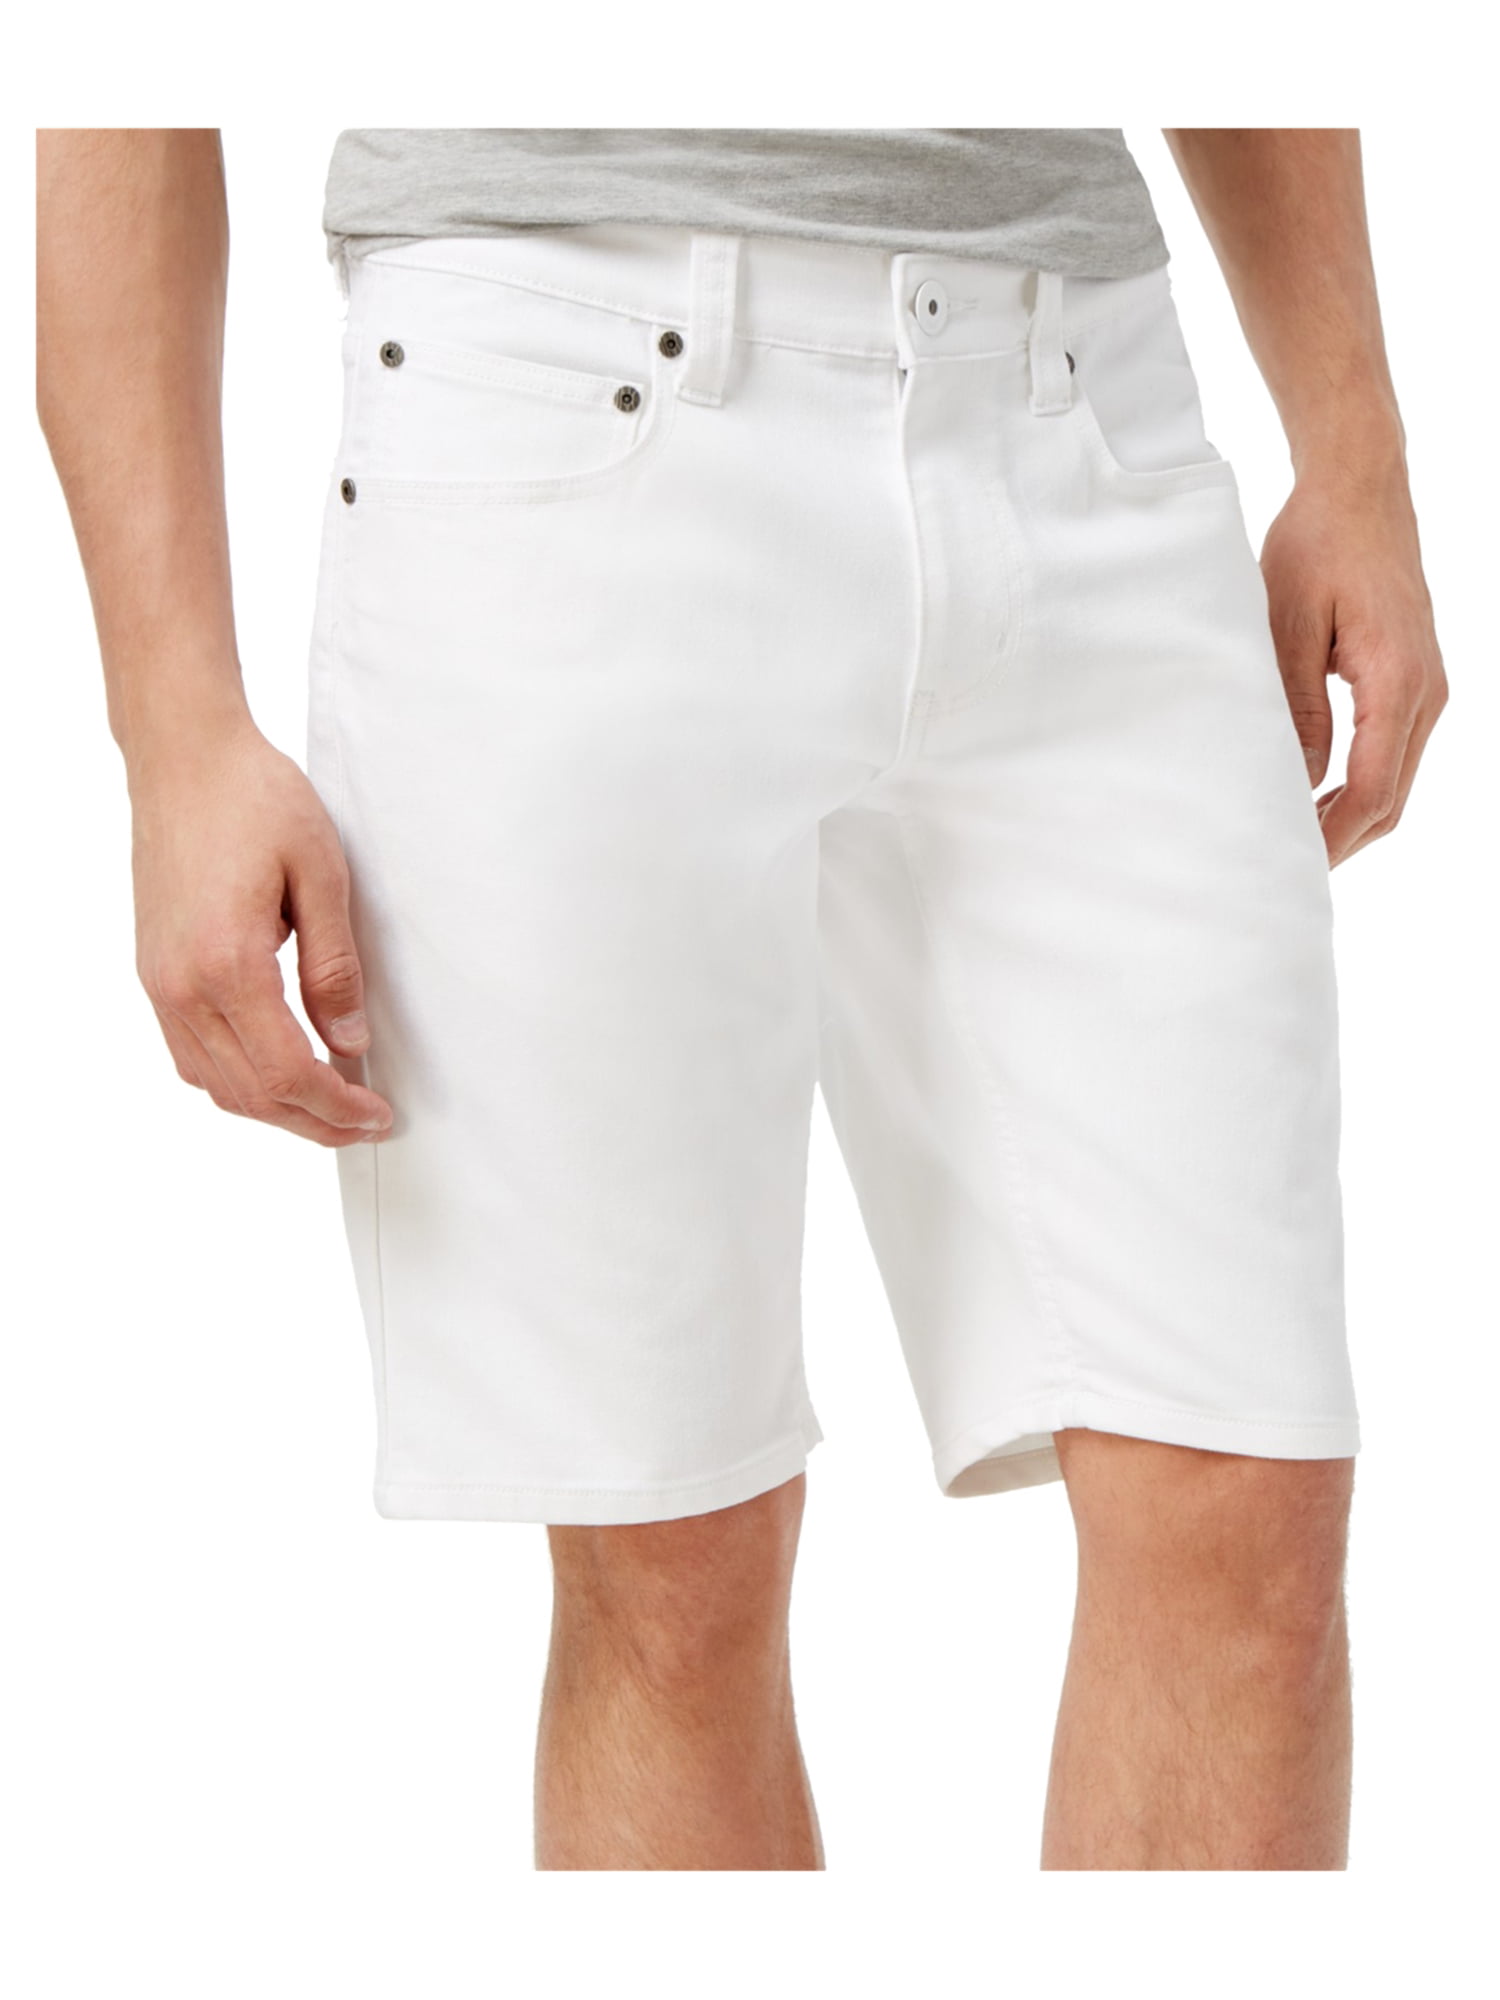 Cheap white shorts mens